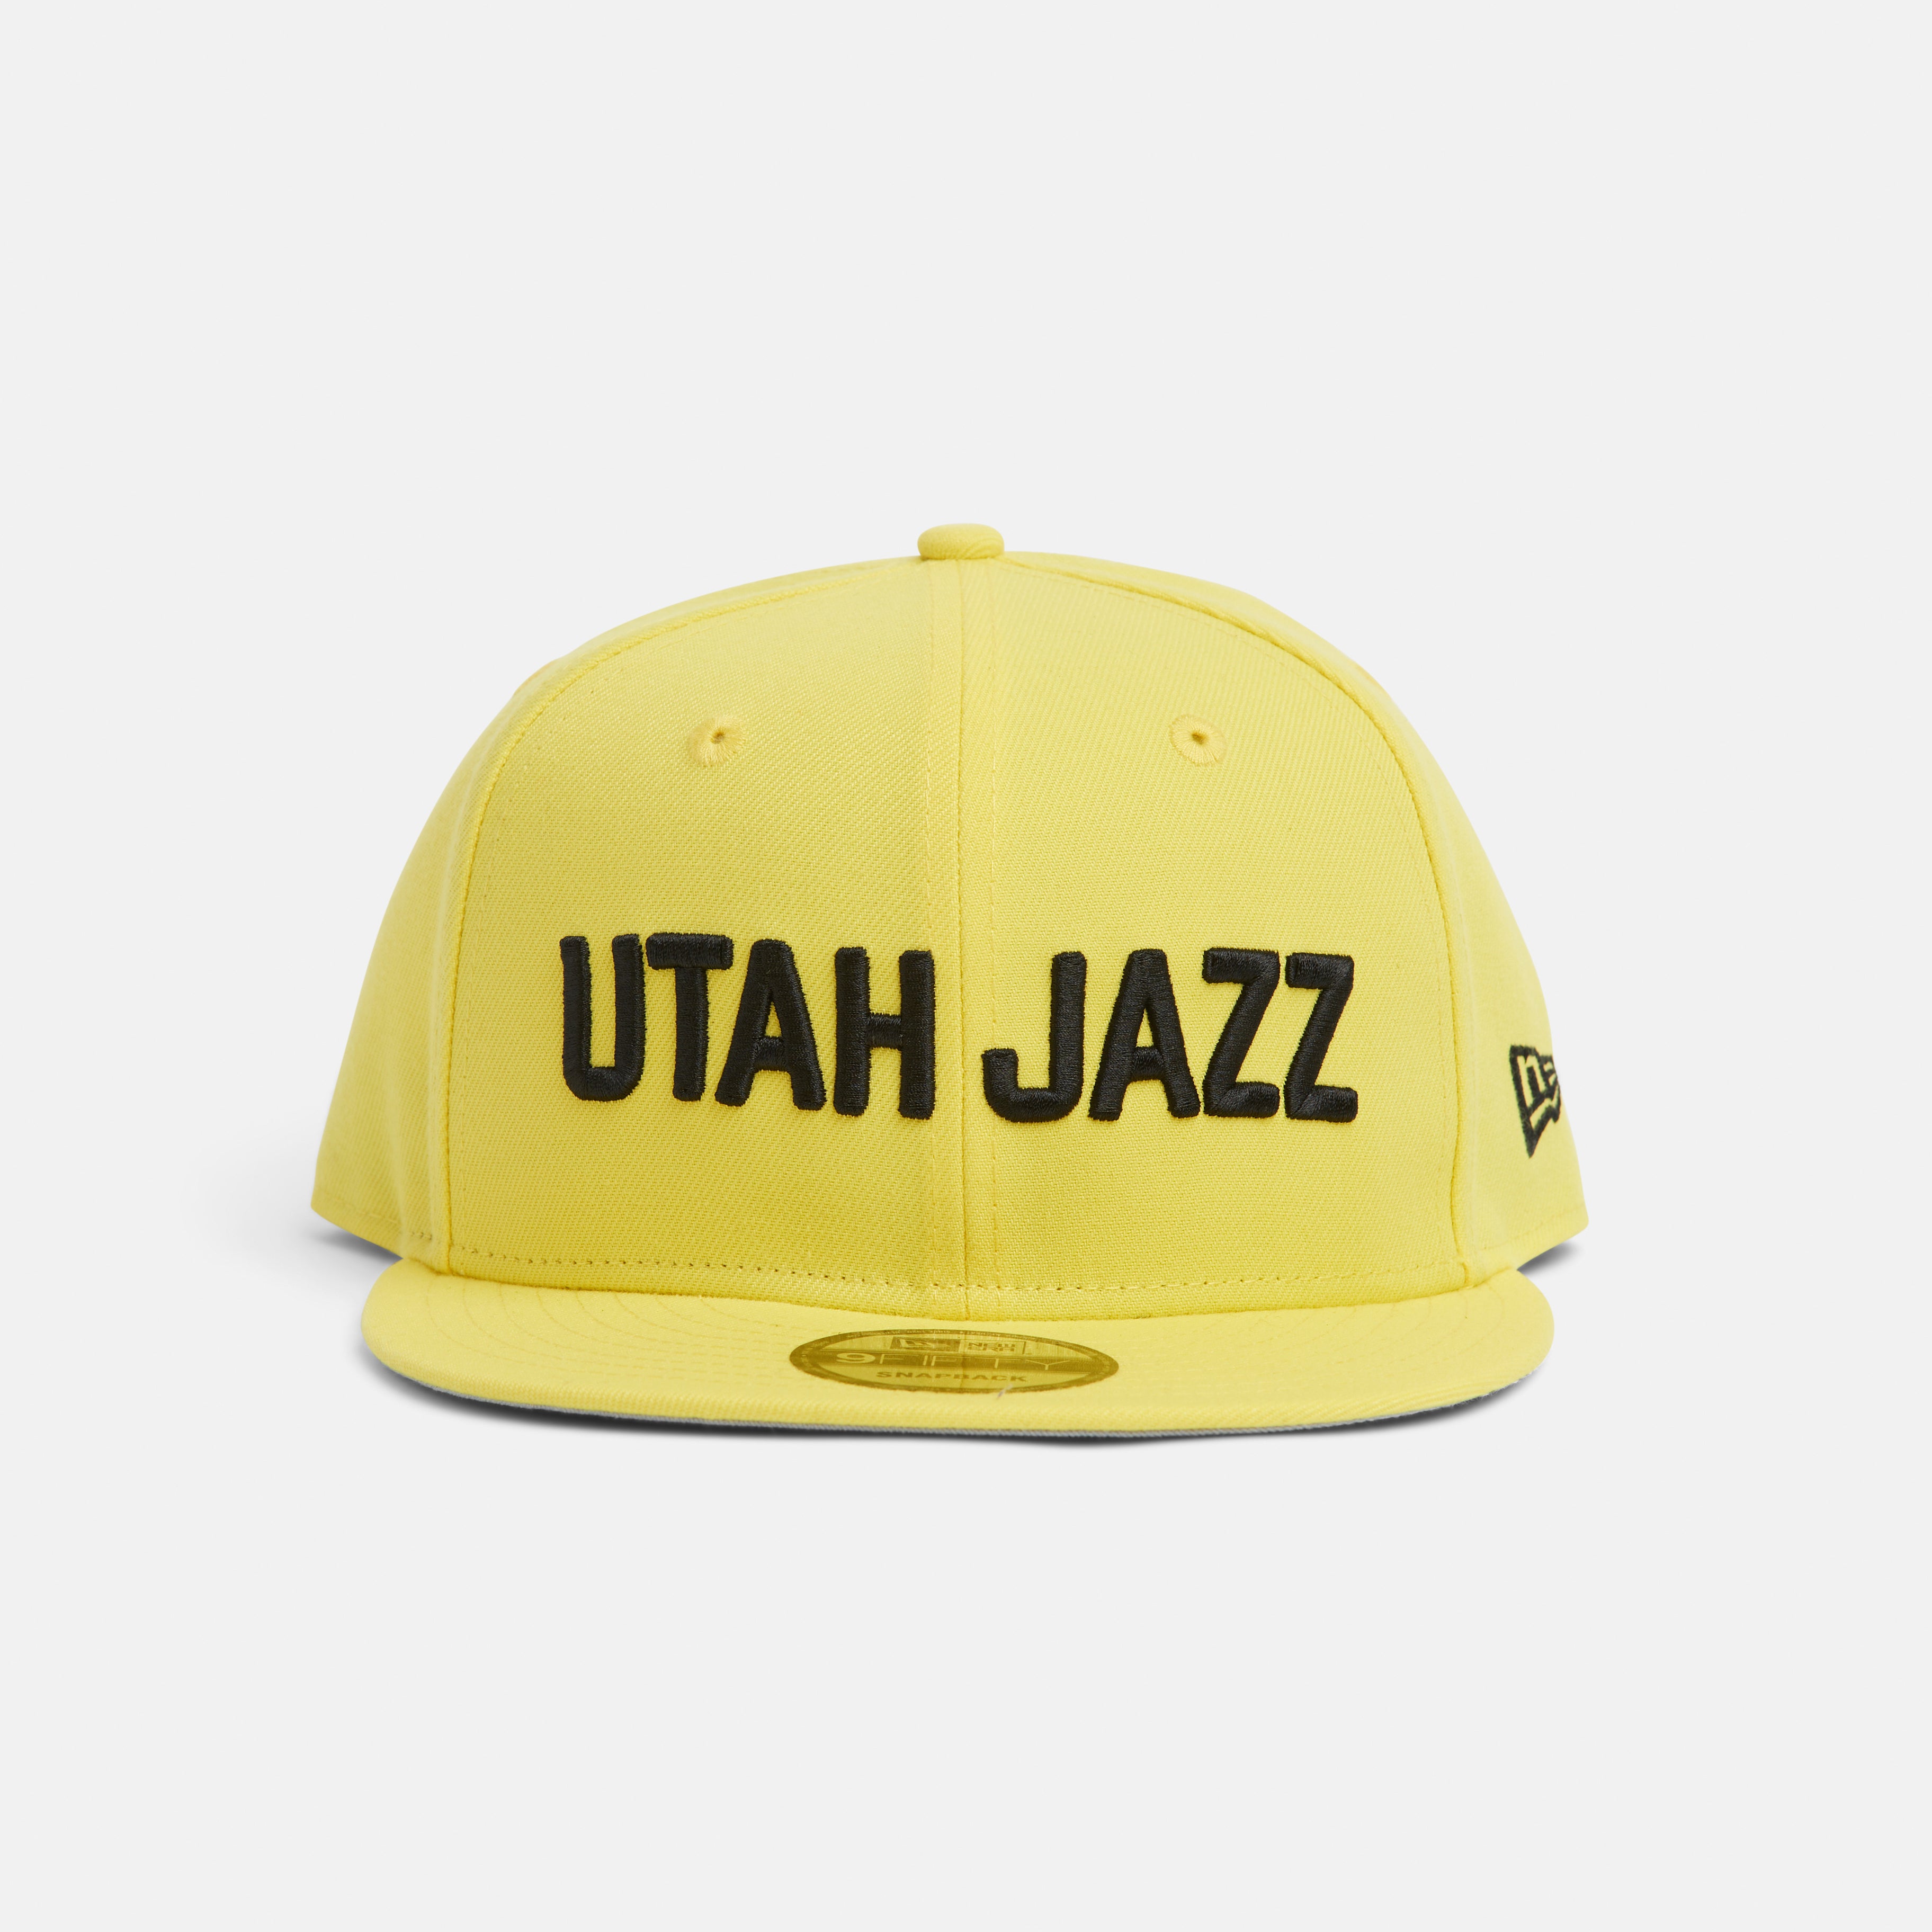 Front yellow 950 with Black Utah Jazz logo.